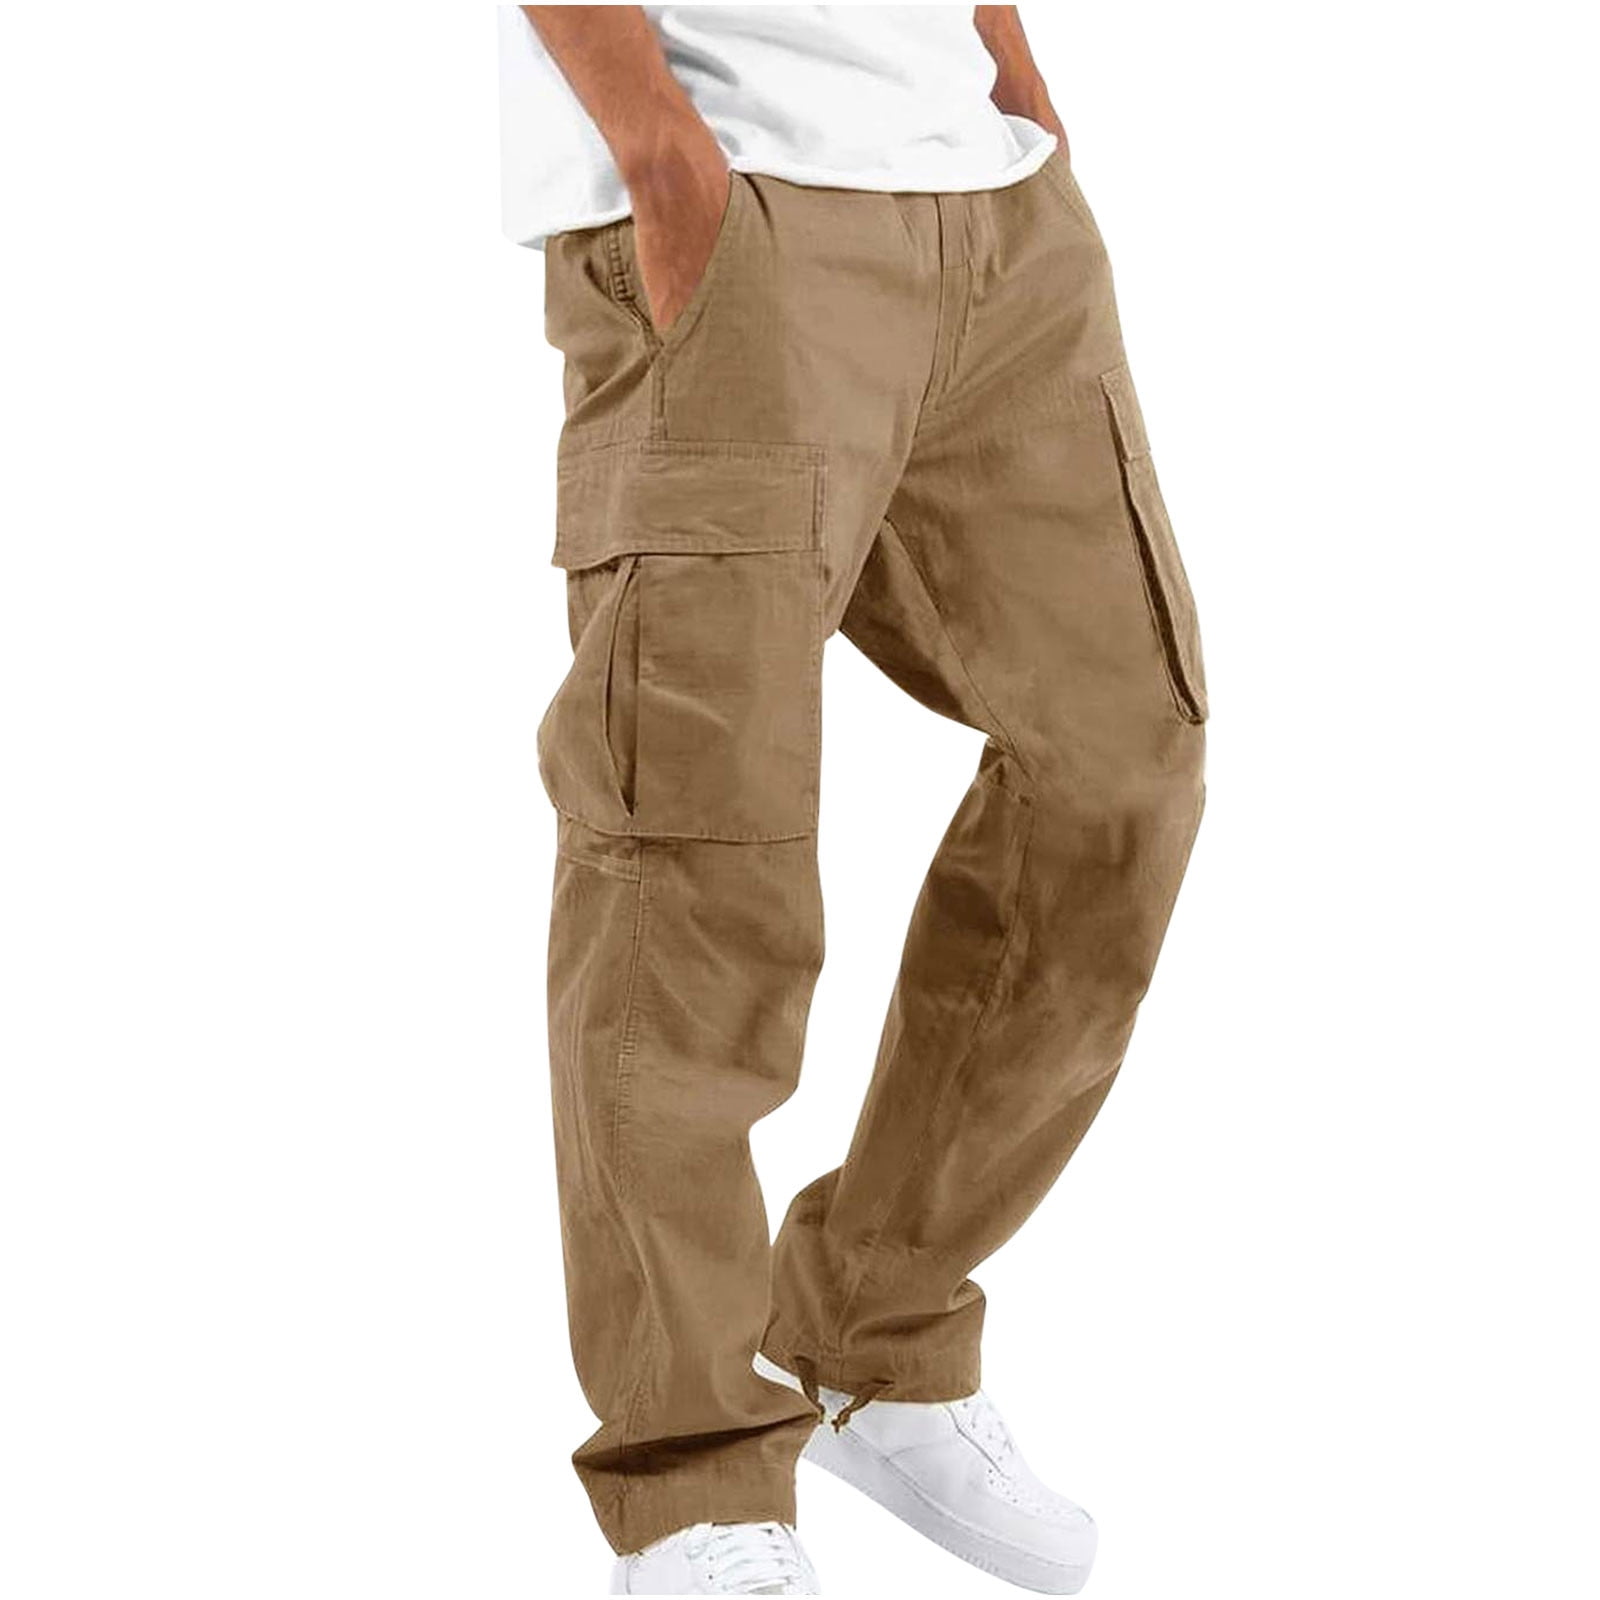 Mens Cargo Pants Sale Flash Sales - www.azc.com.co 1694087225